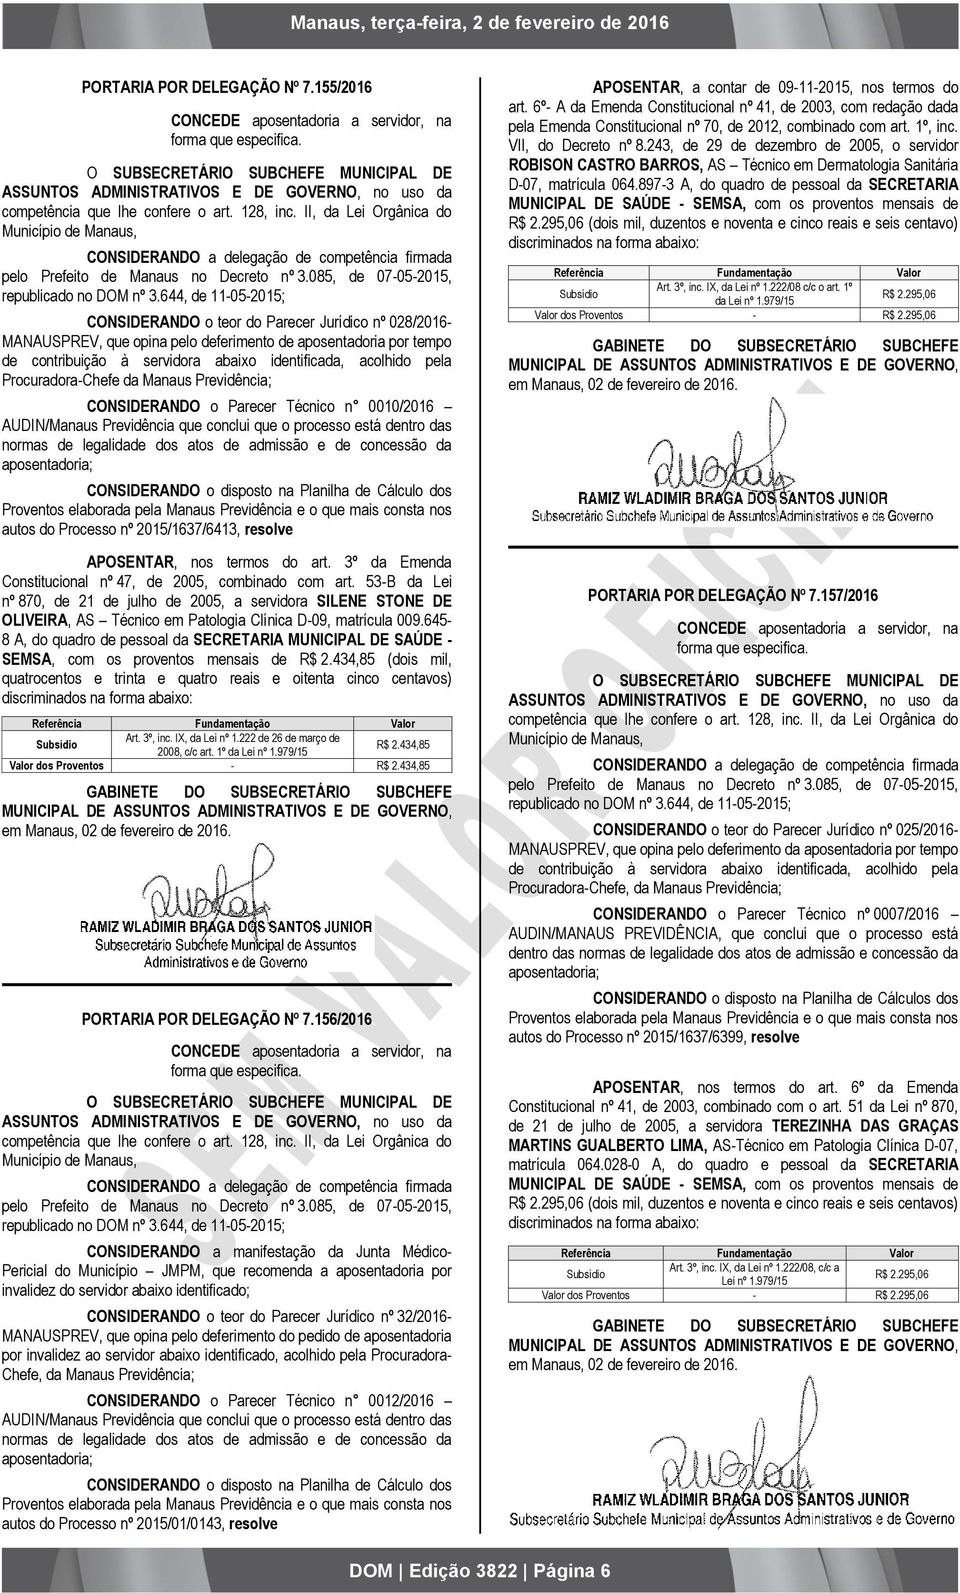 II, da Lei Orgânica do Município de Manaus, CONSIDERANDO a delegação de competência firmada pelo Prefeito de Manaus no Decreto nº 3.085, de 07-05-2015, republicado no DOM nº 3.